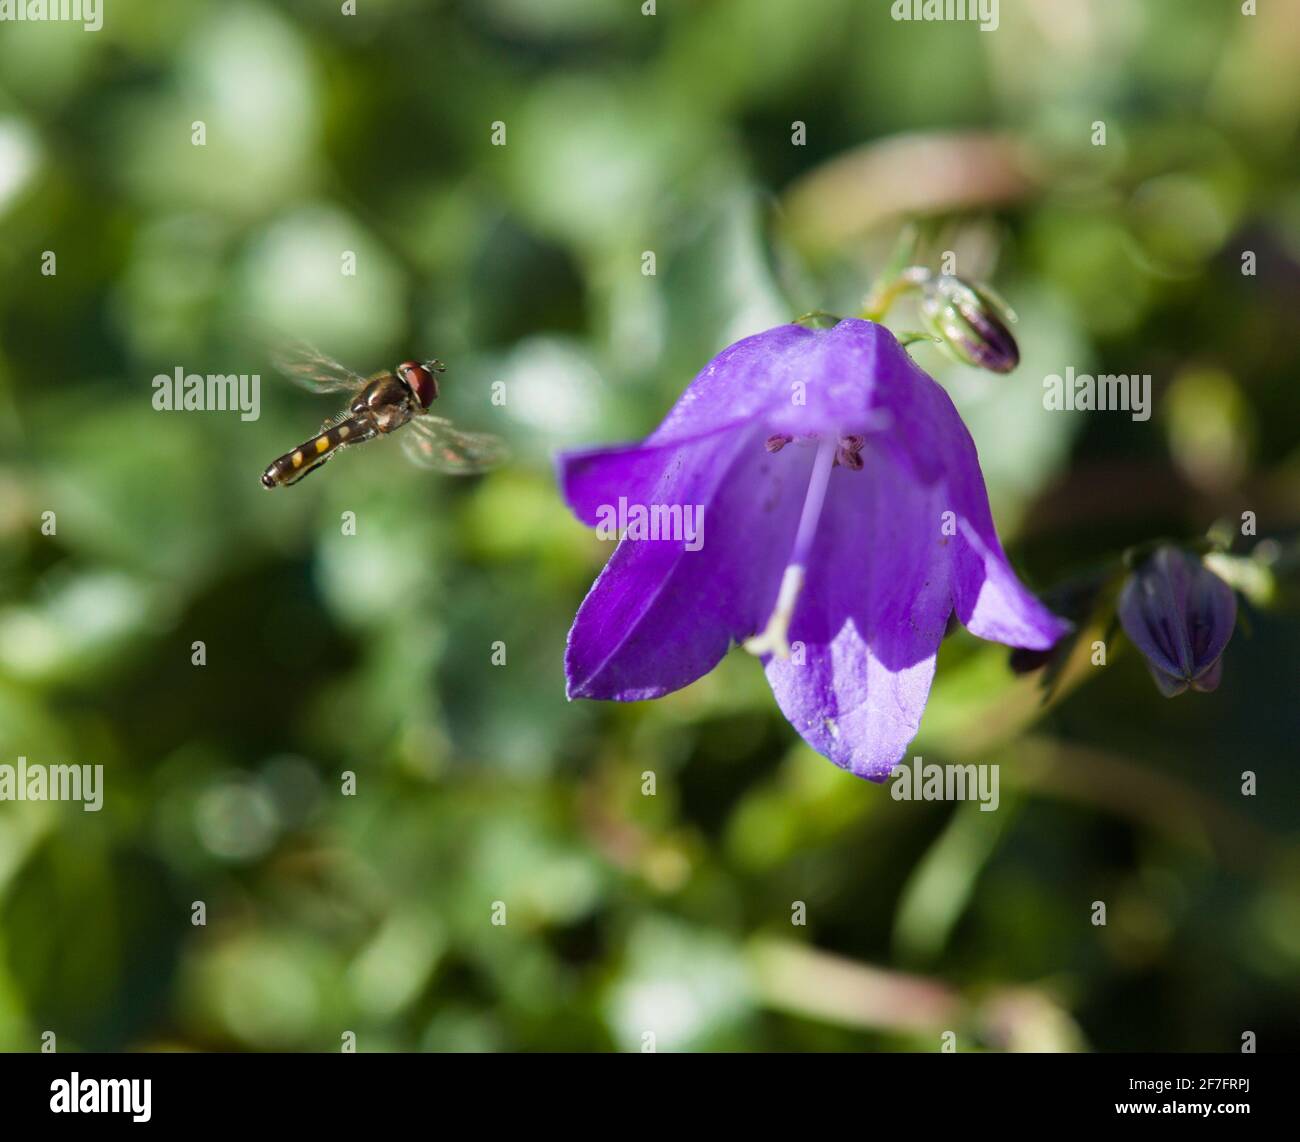 Natural World Beauty / Amazing Insects - Vista di un Volate in volo / famiglia scirpata che si avvicina Violet-blu Dwarf Bellflowers / Timboli fata / Foto Stock